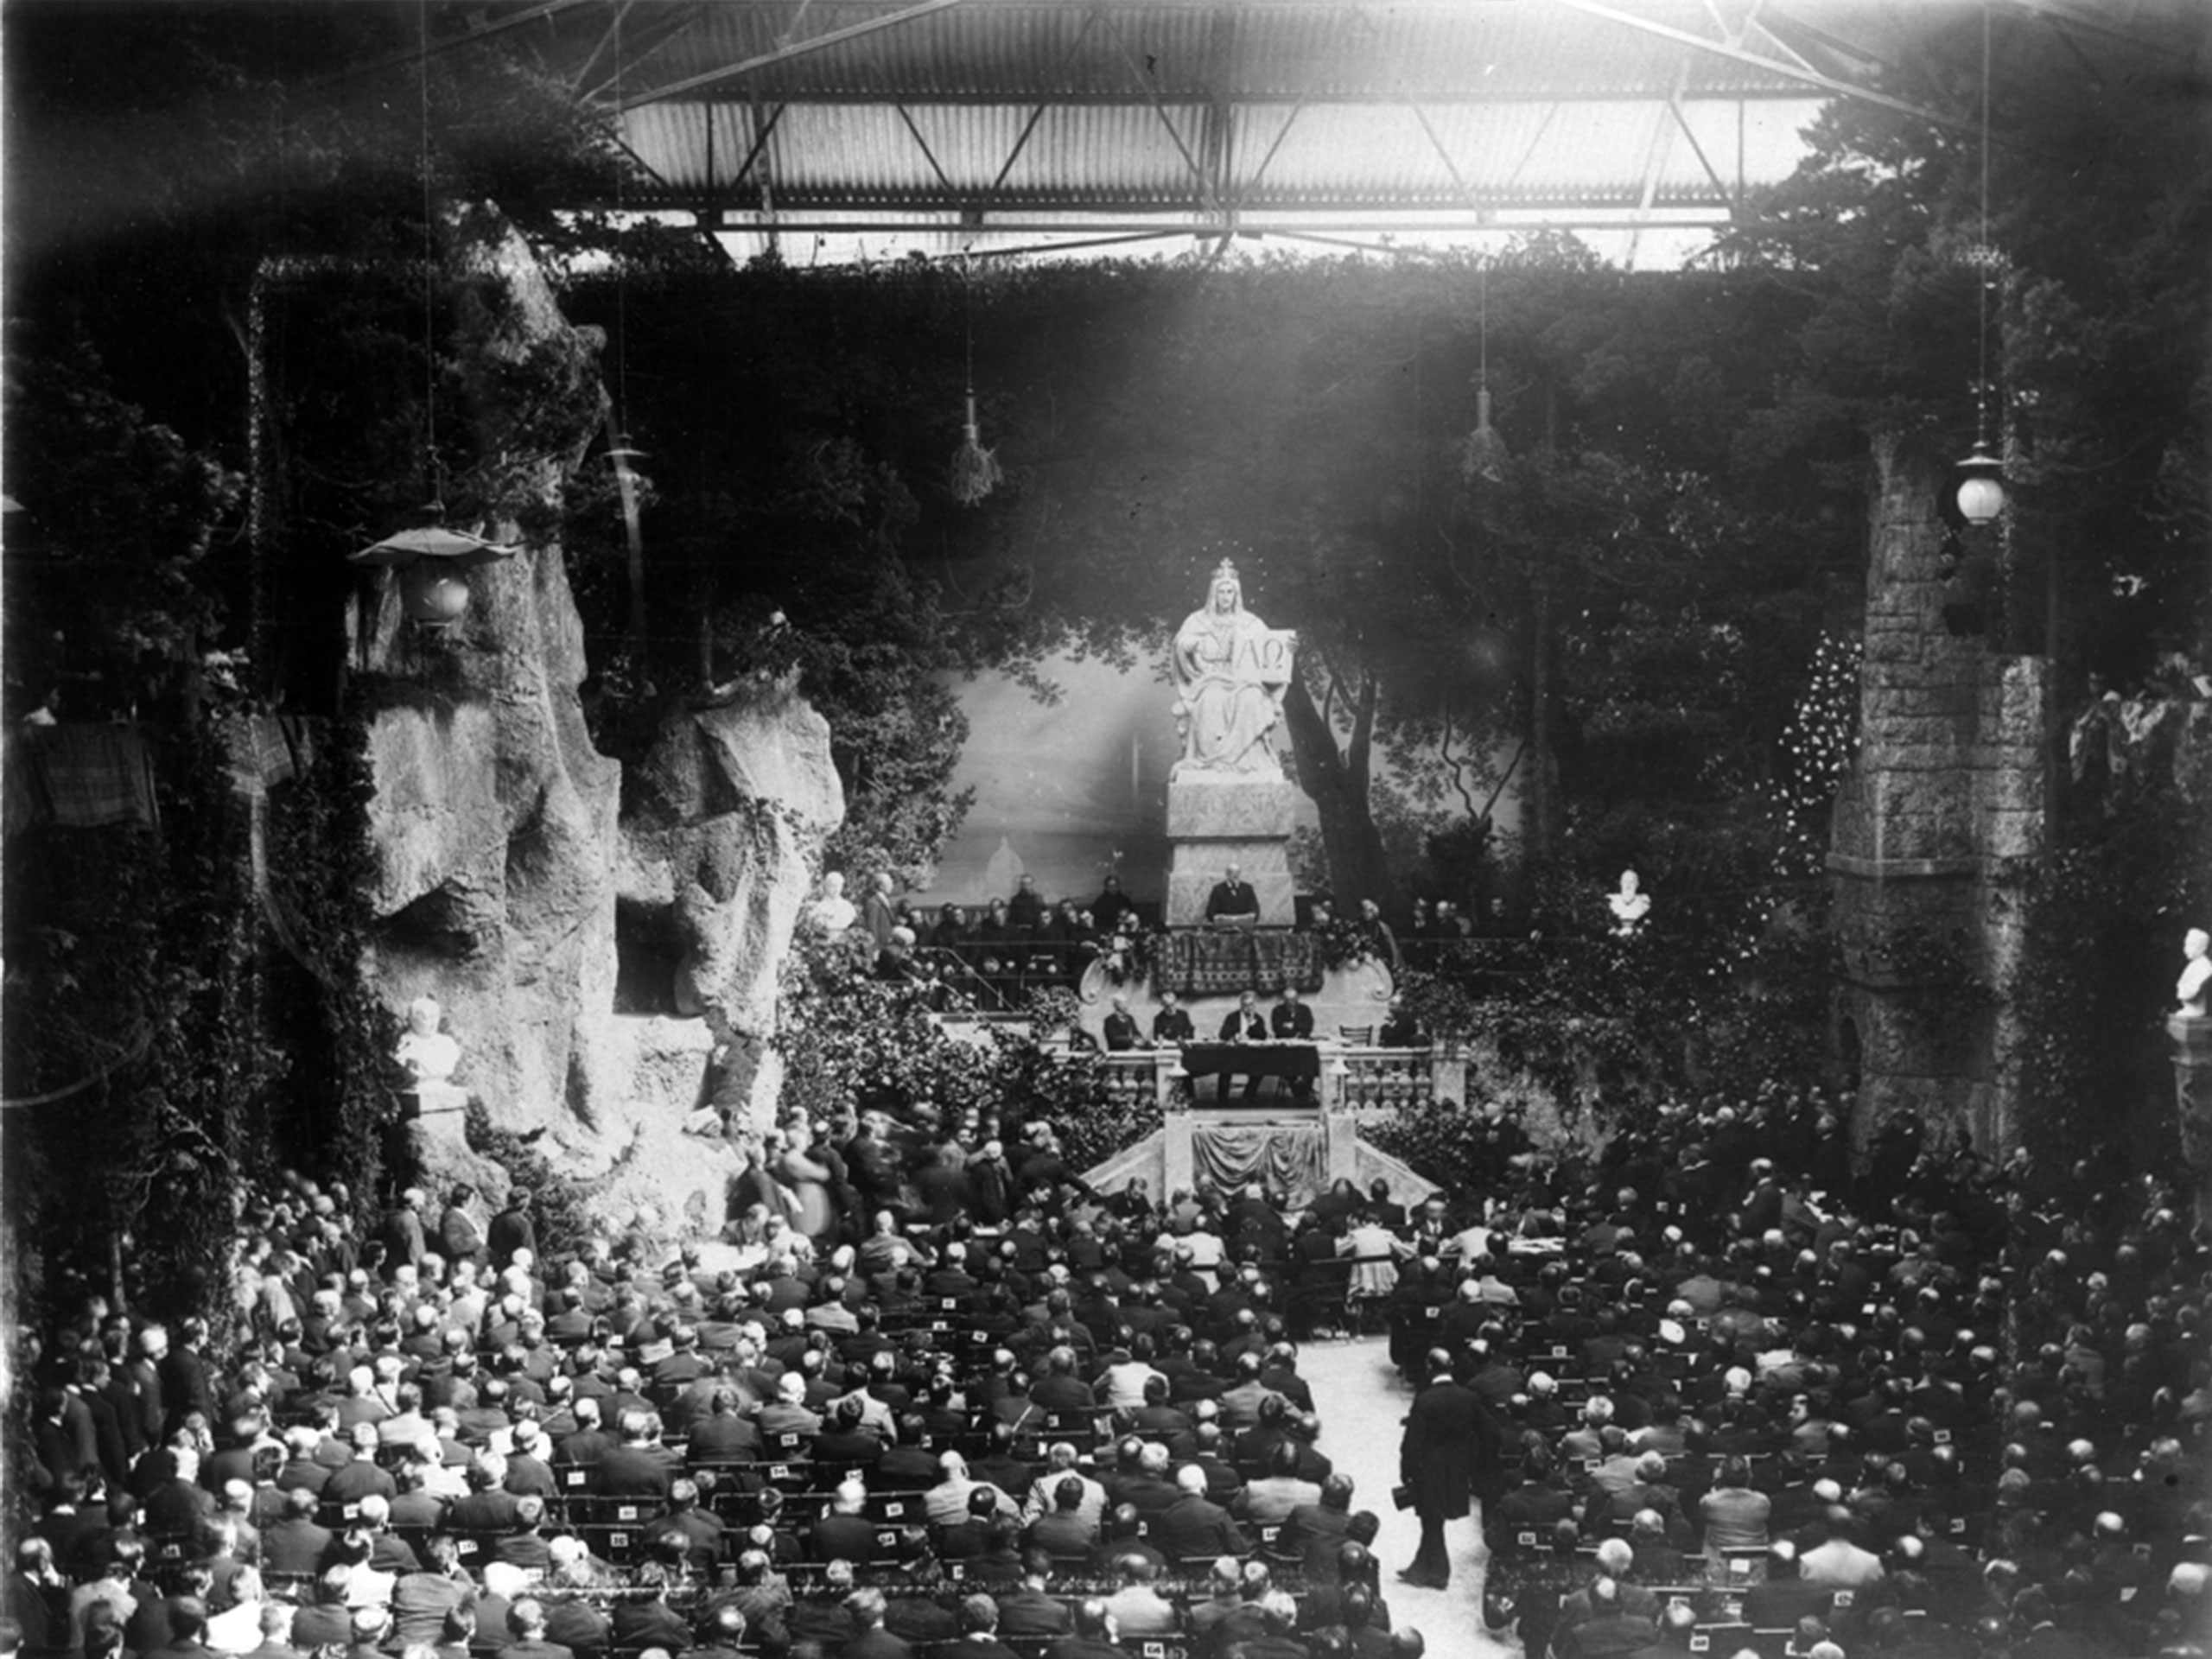 Schwarz-Weiß Bild einer Generalversammlung vor längerer Zeit.